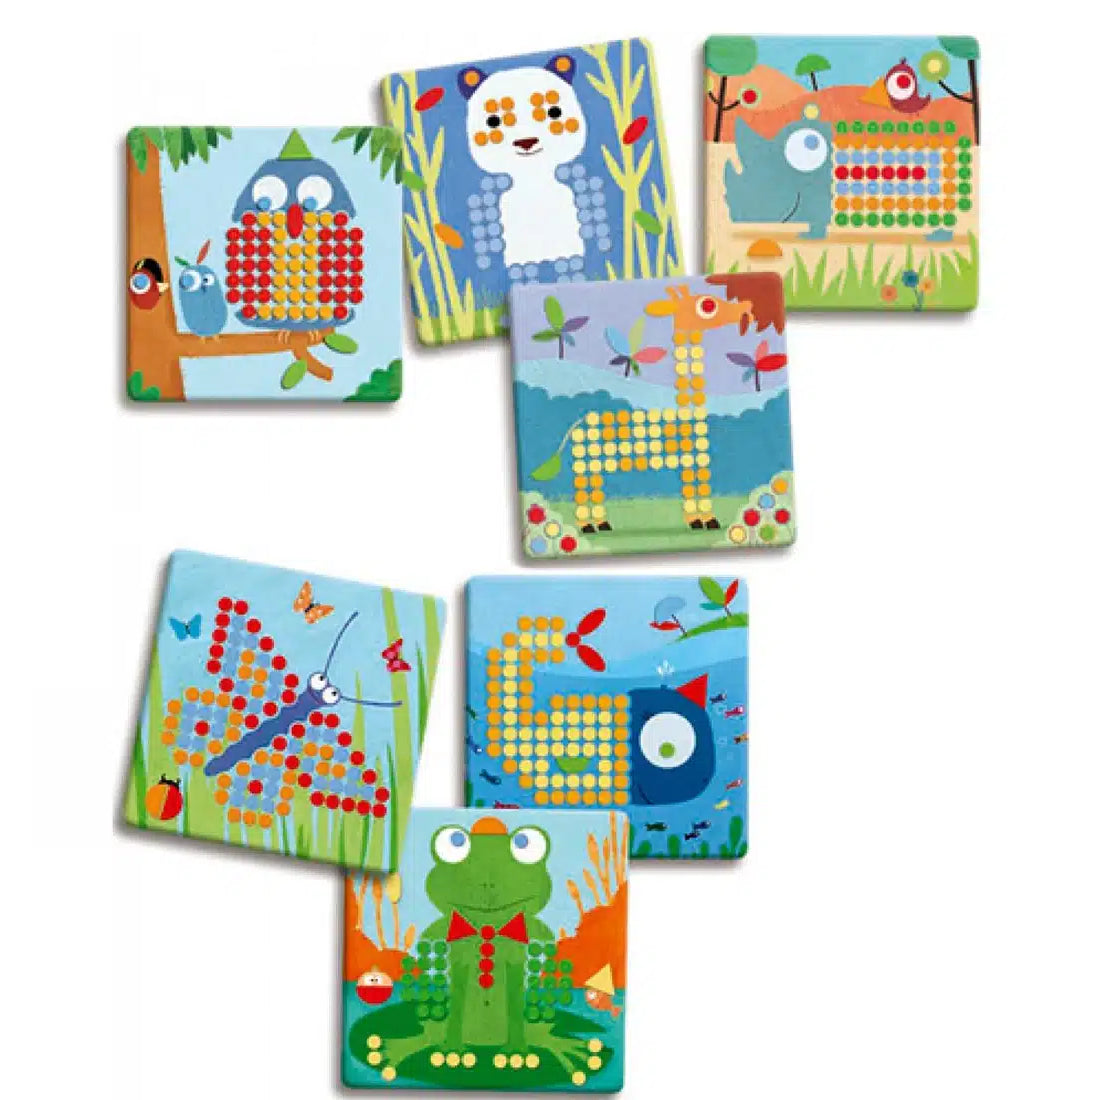 Jogo Mosaico com pinos - Rigolo | Djeco Djeco Mini-Me - Baby & Kids Store